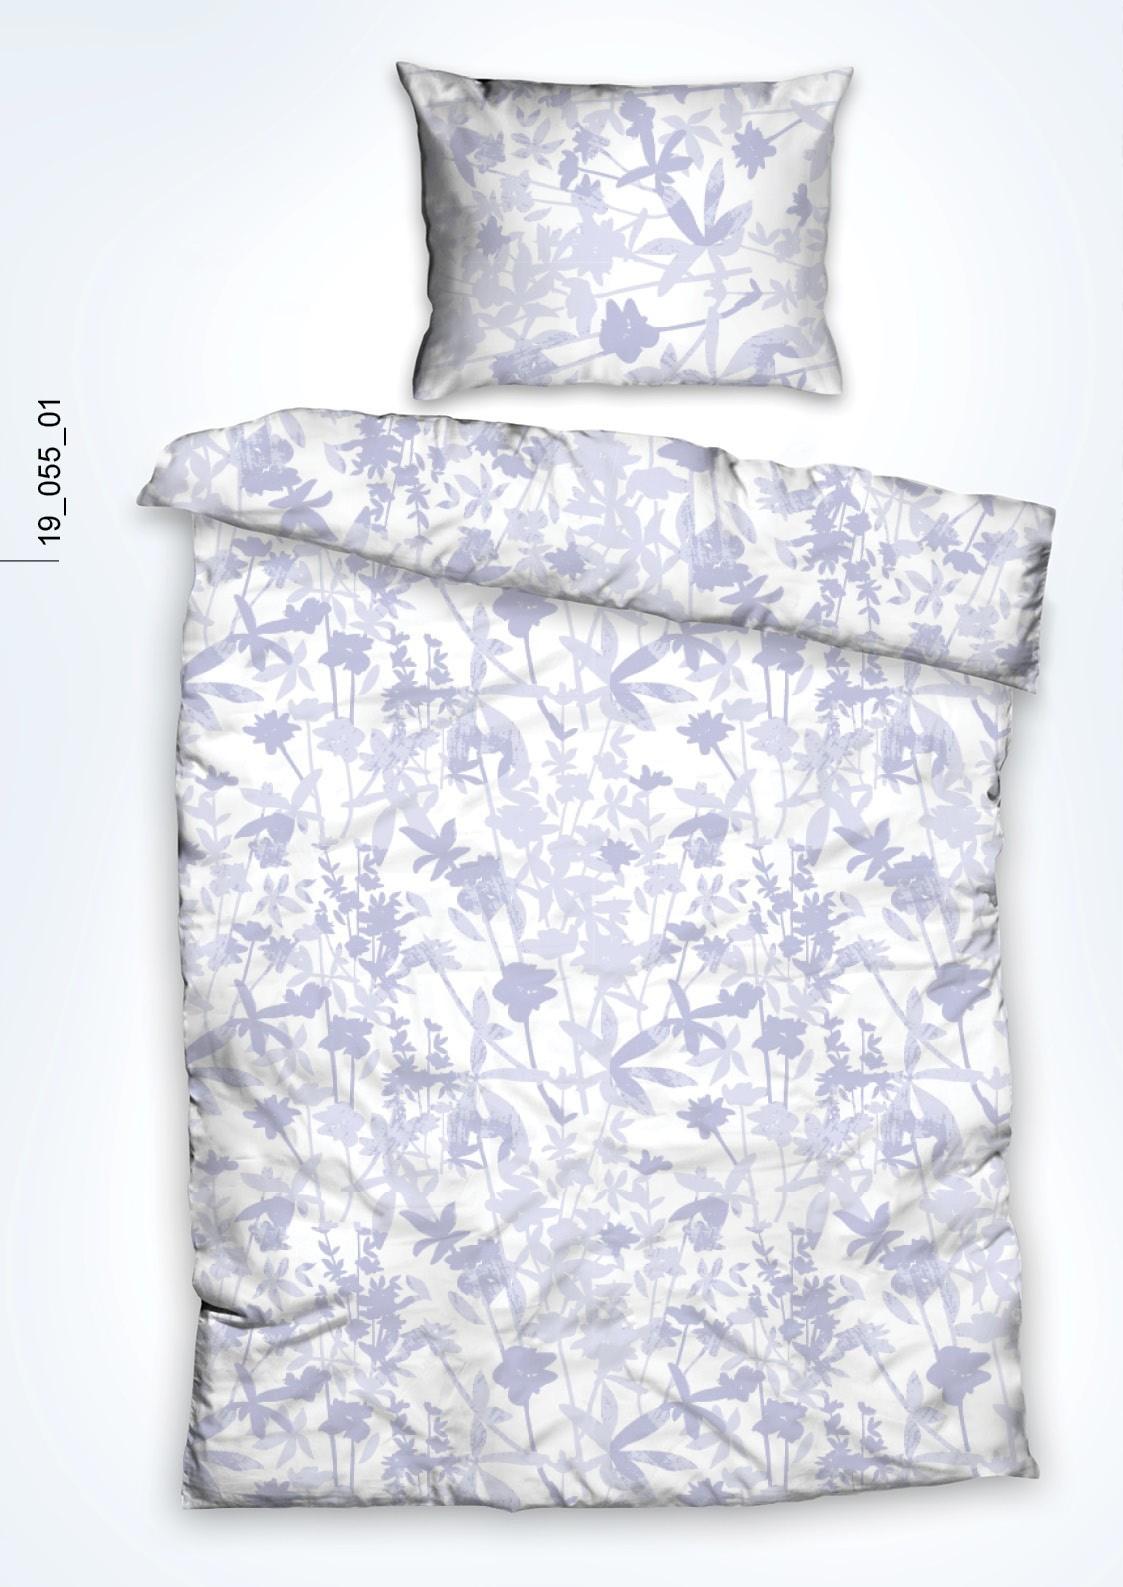 Povlečení Luli, 140/200cm - bílá/fialová, Design, textil (140/200cm)